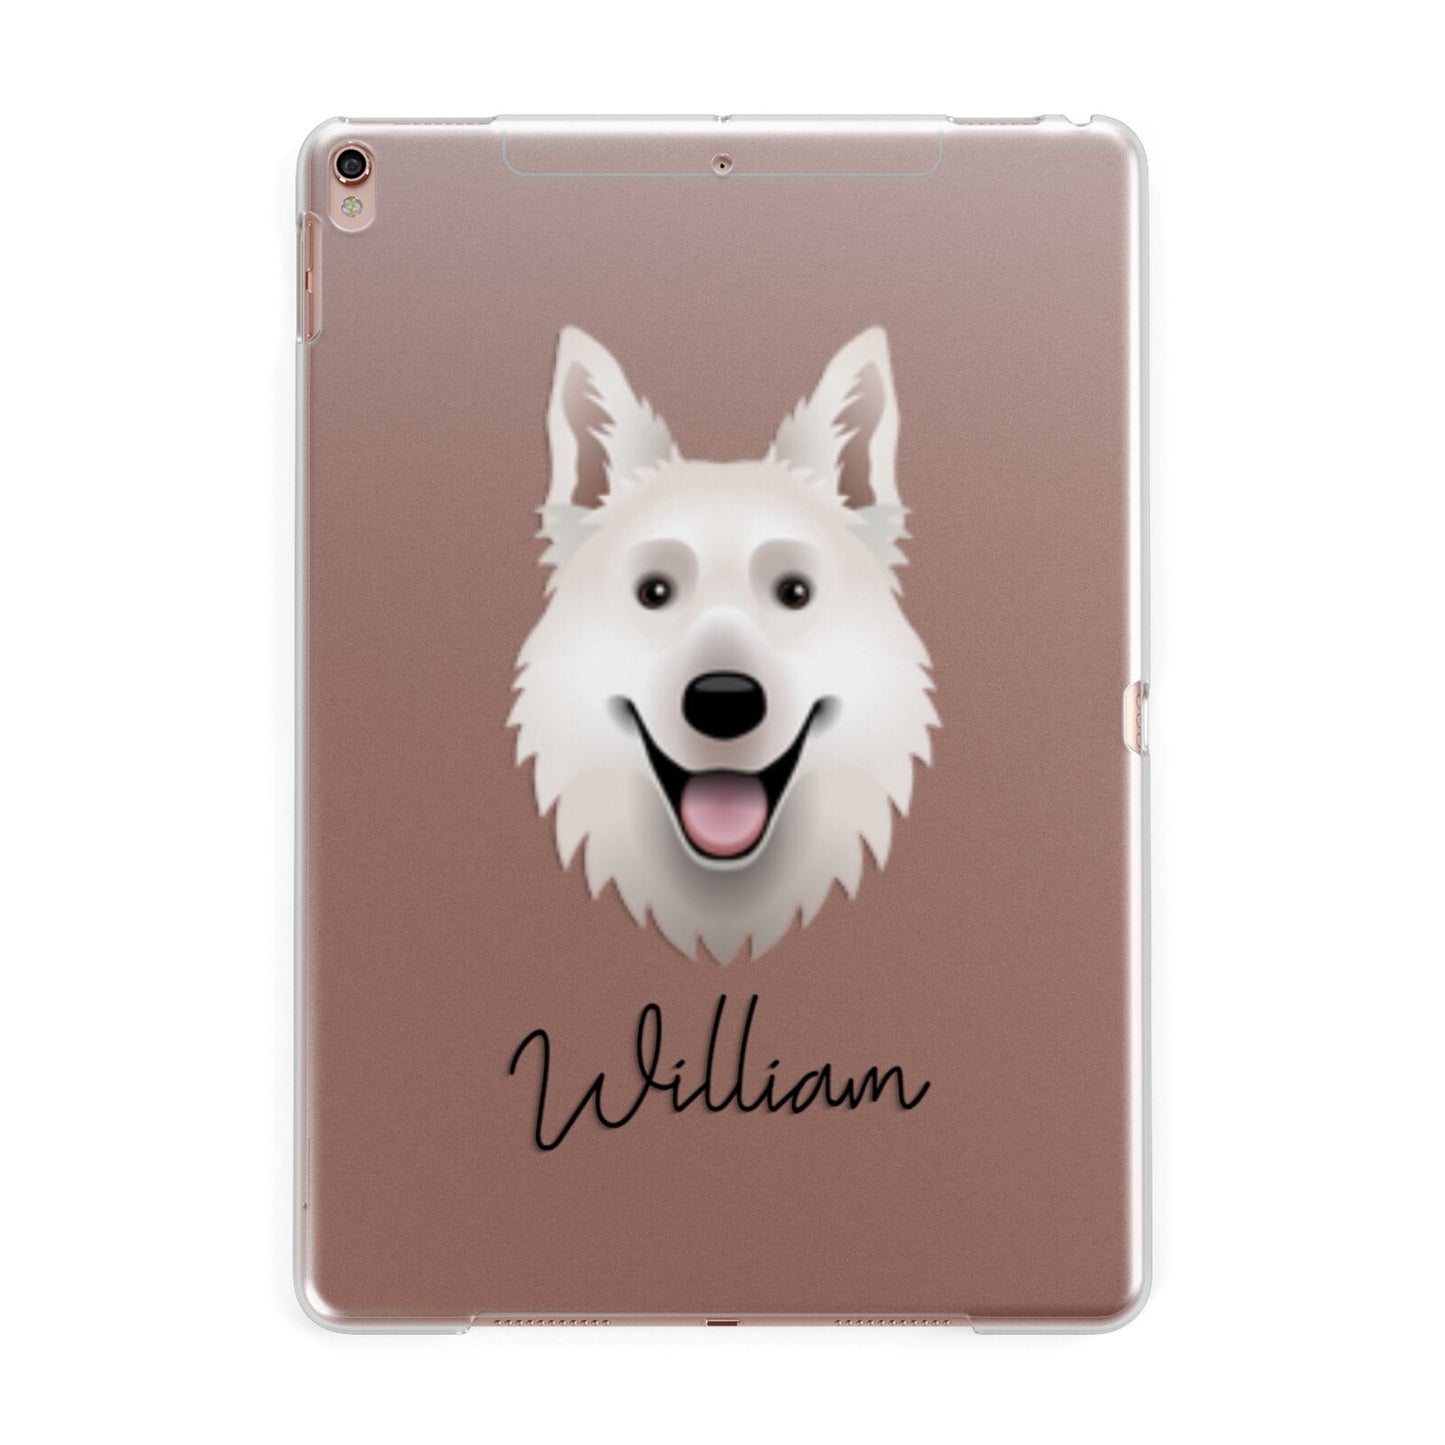 White Swiss Shepherd Dog Personalised Apple iPad Rose Gold Case